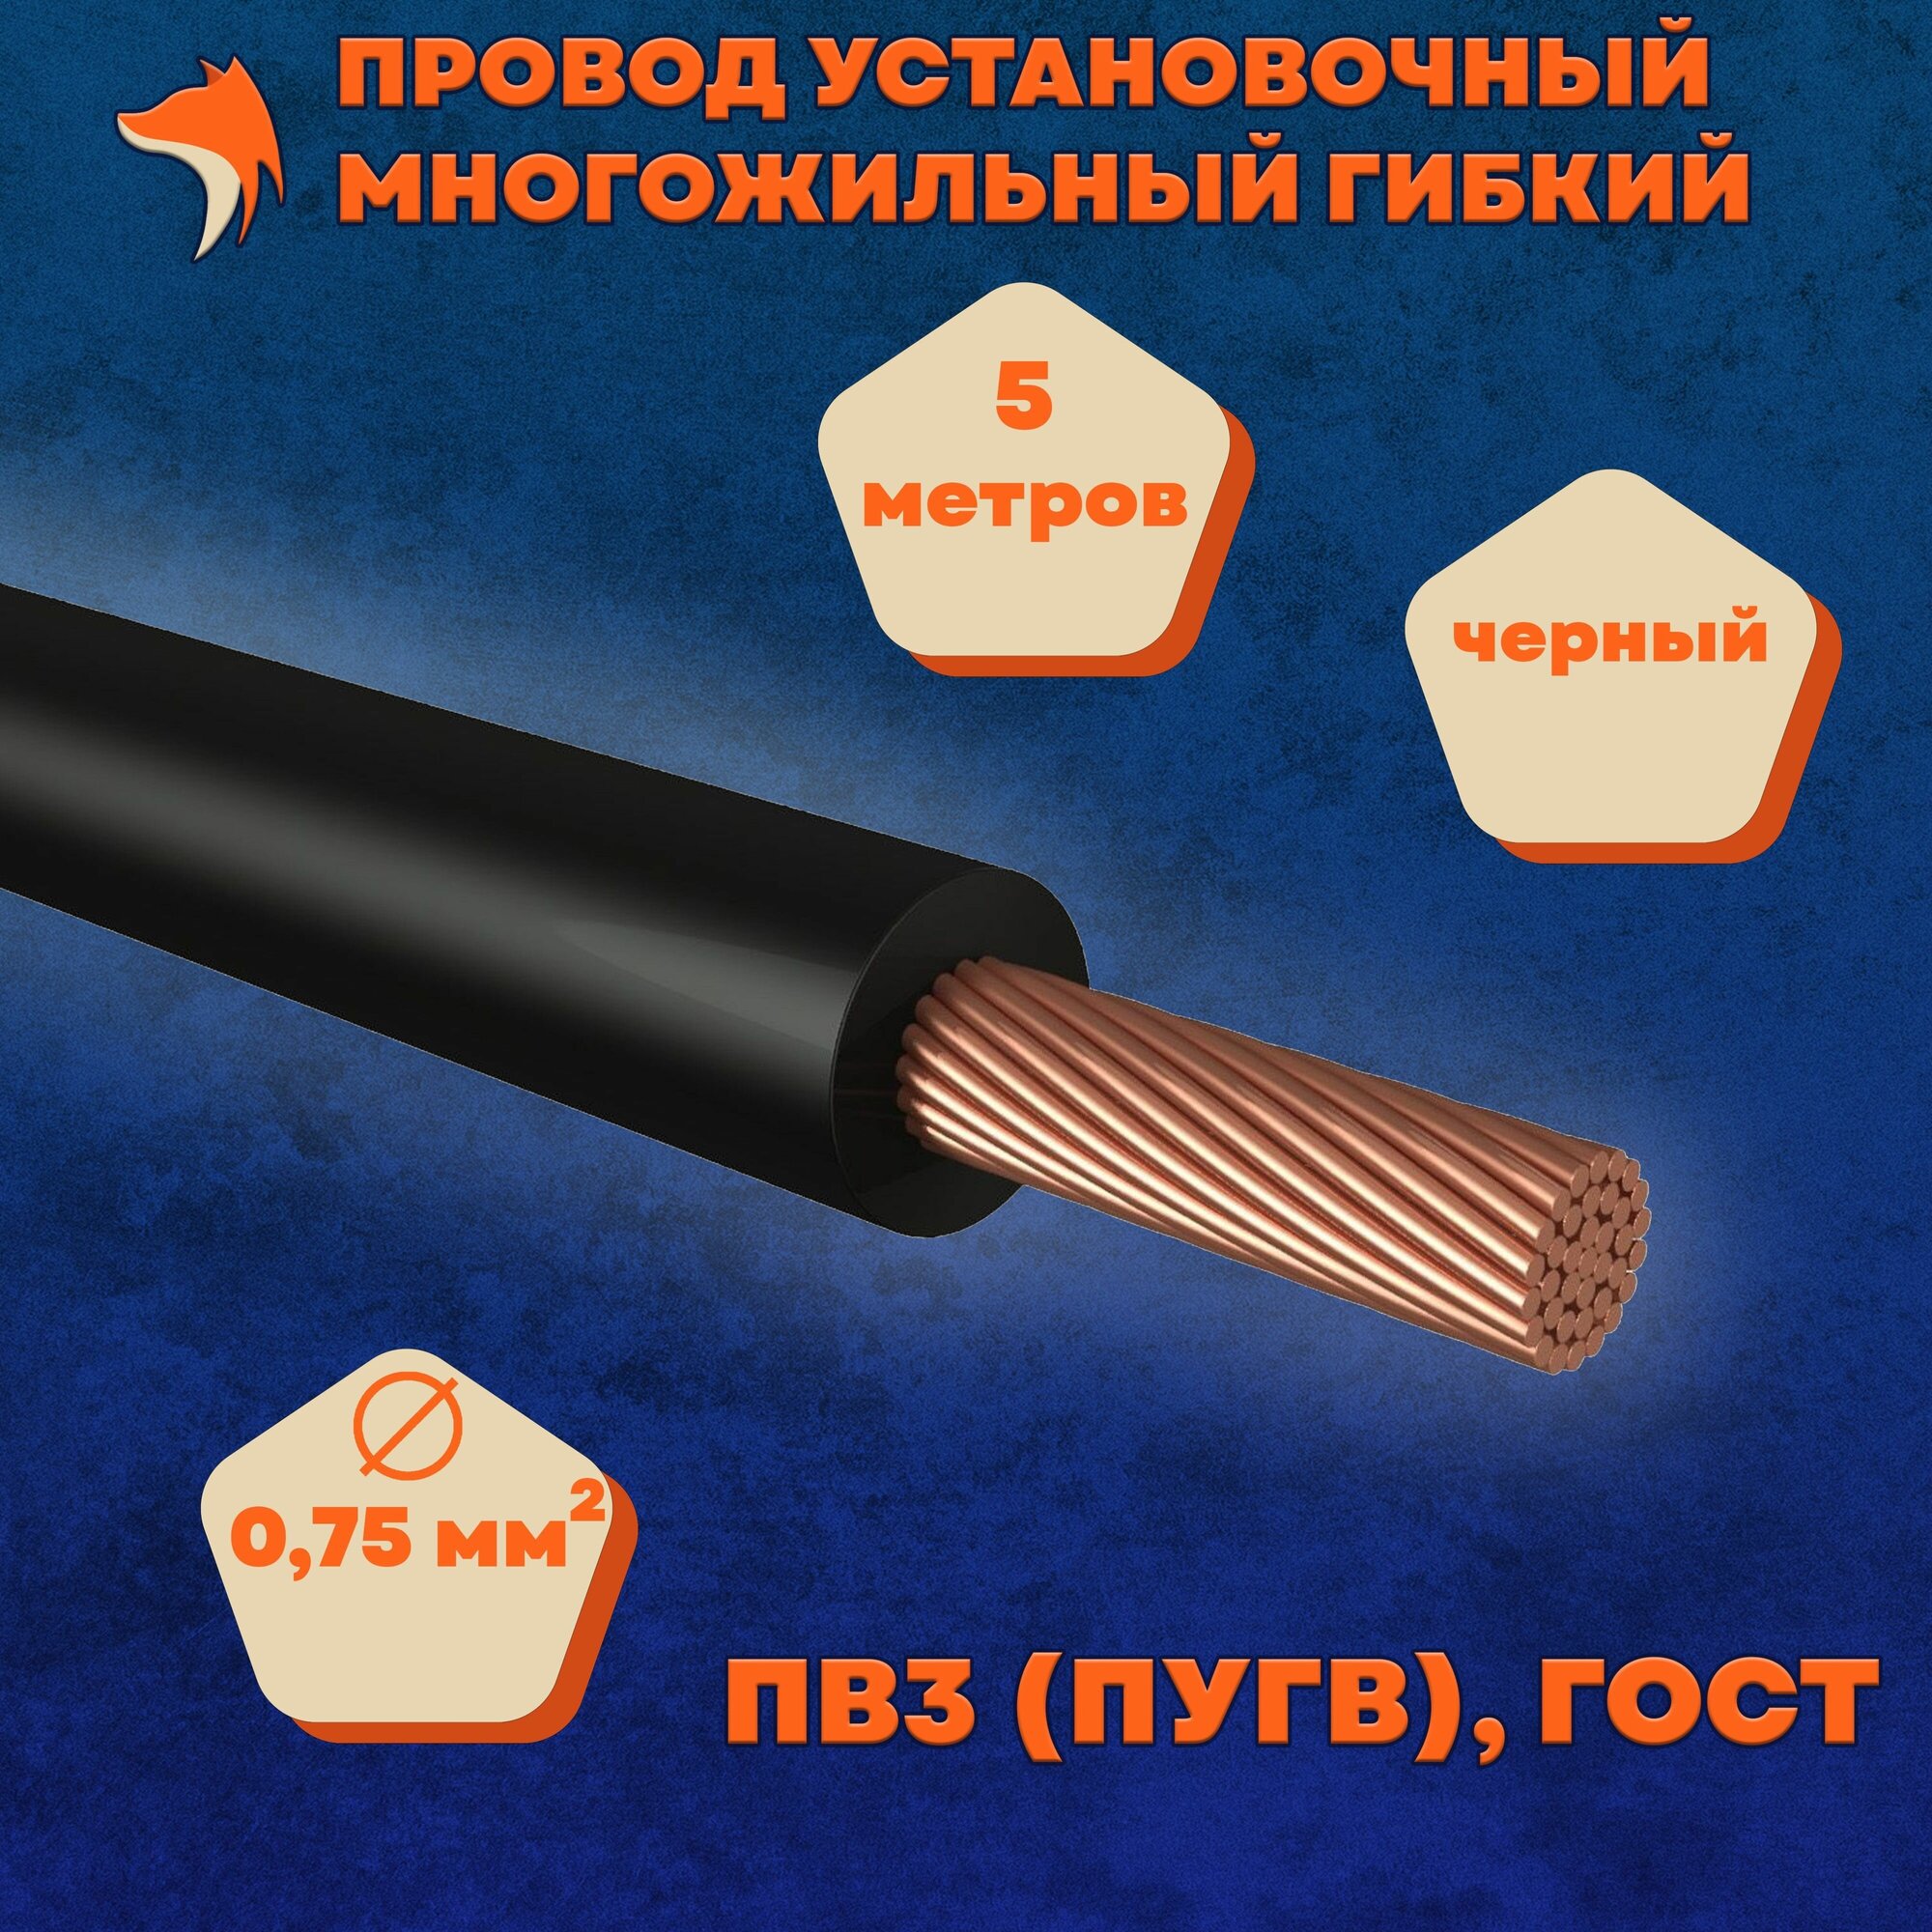 Провод установочный многожильный гибкий ПВ3 (ПуГВ) 0.75 мм , черный, 5 метров - фотография № 1